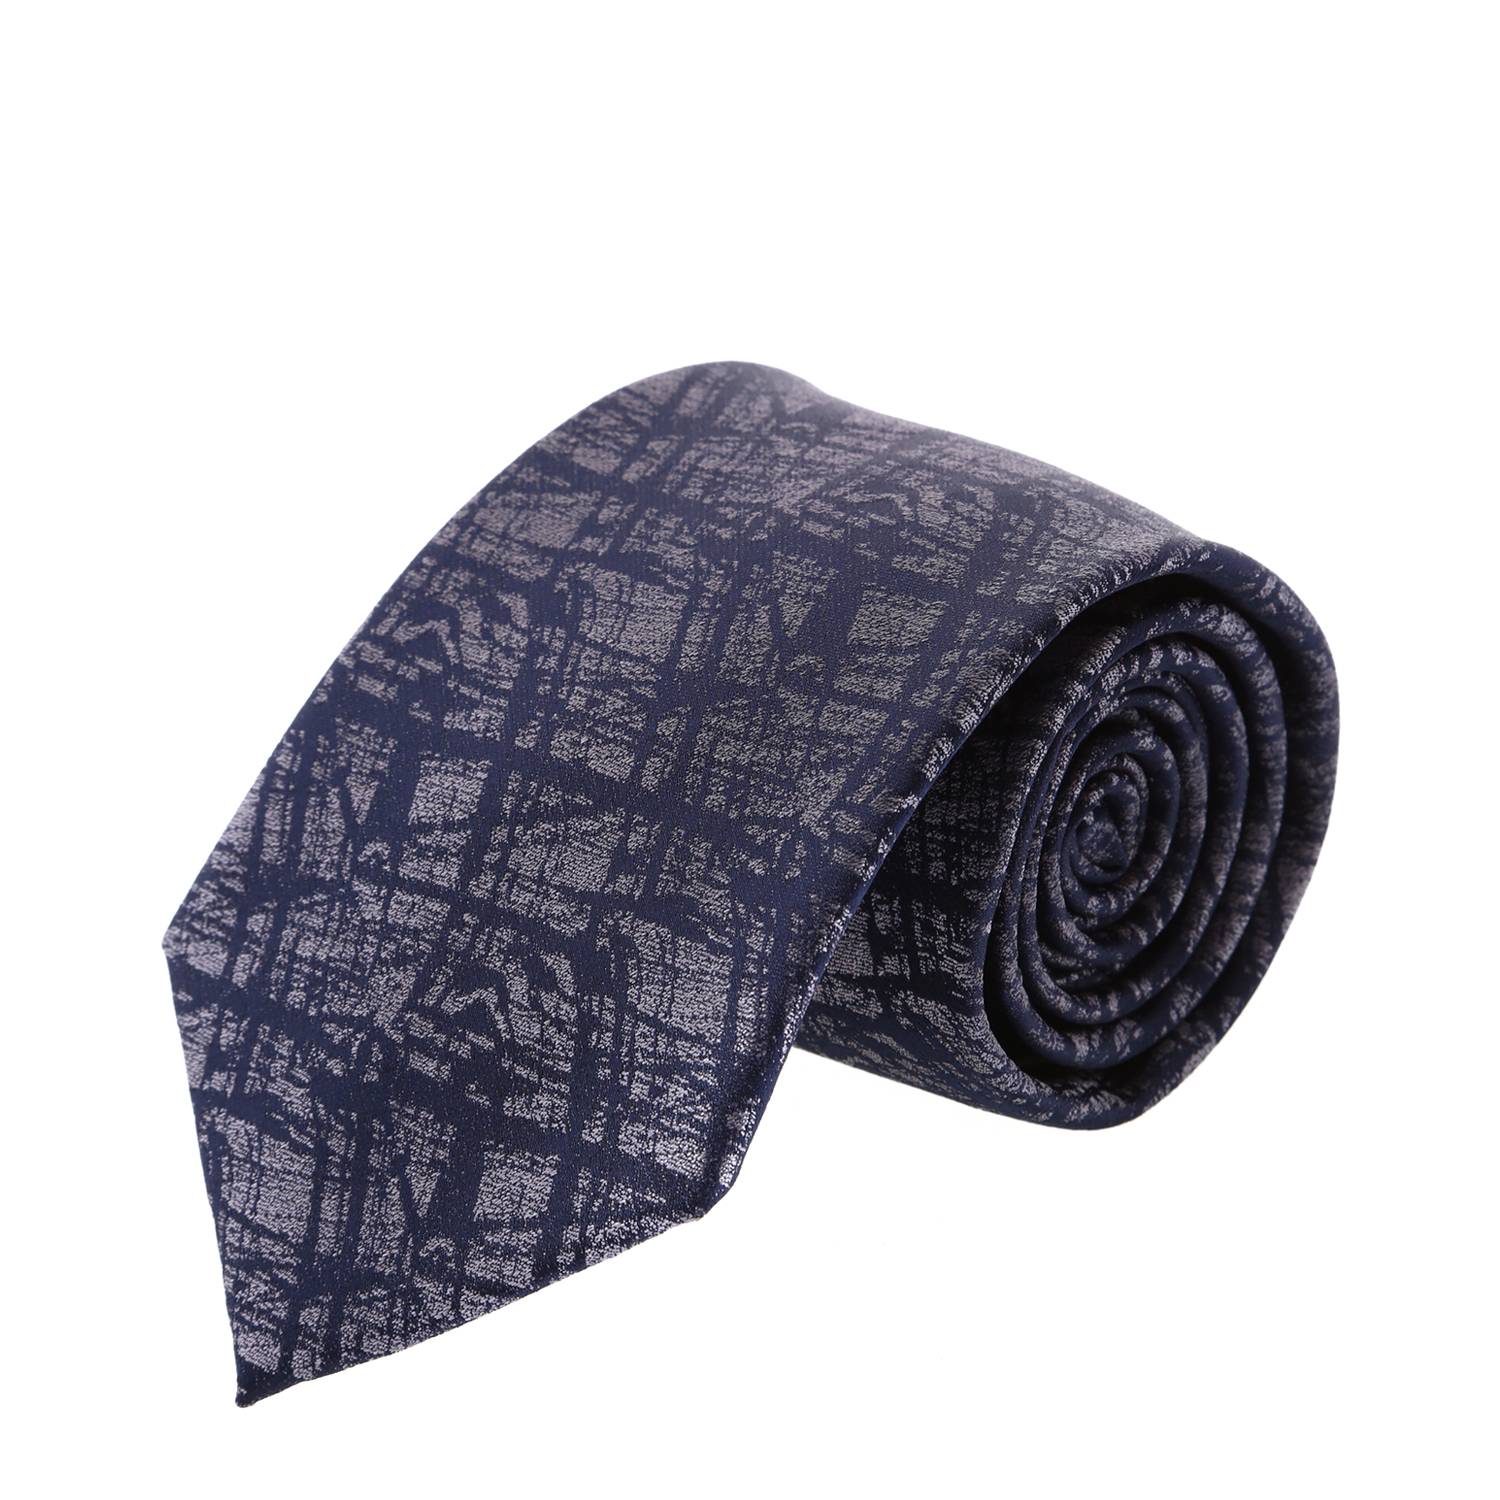 עניבה דגם שפכטל אפור משולב